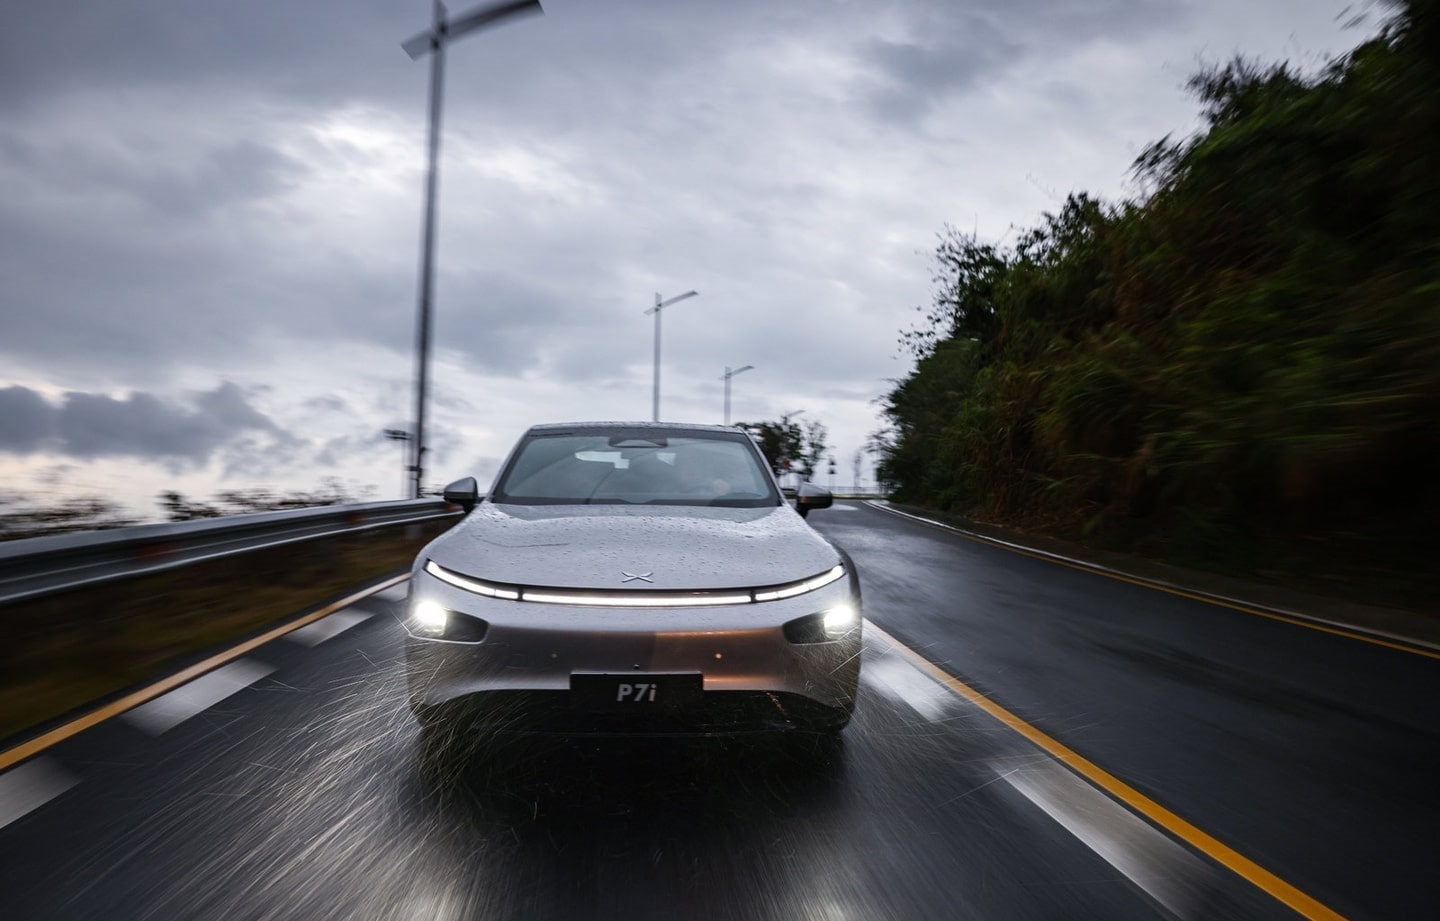 اکس پنگ پی7آی؛ خودروی چینی الکتریکی با فناوری رانندگی خودران (+عکس)